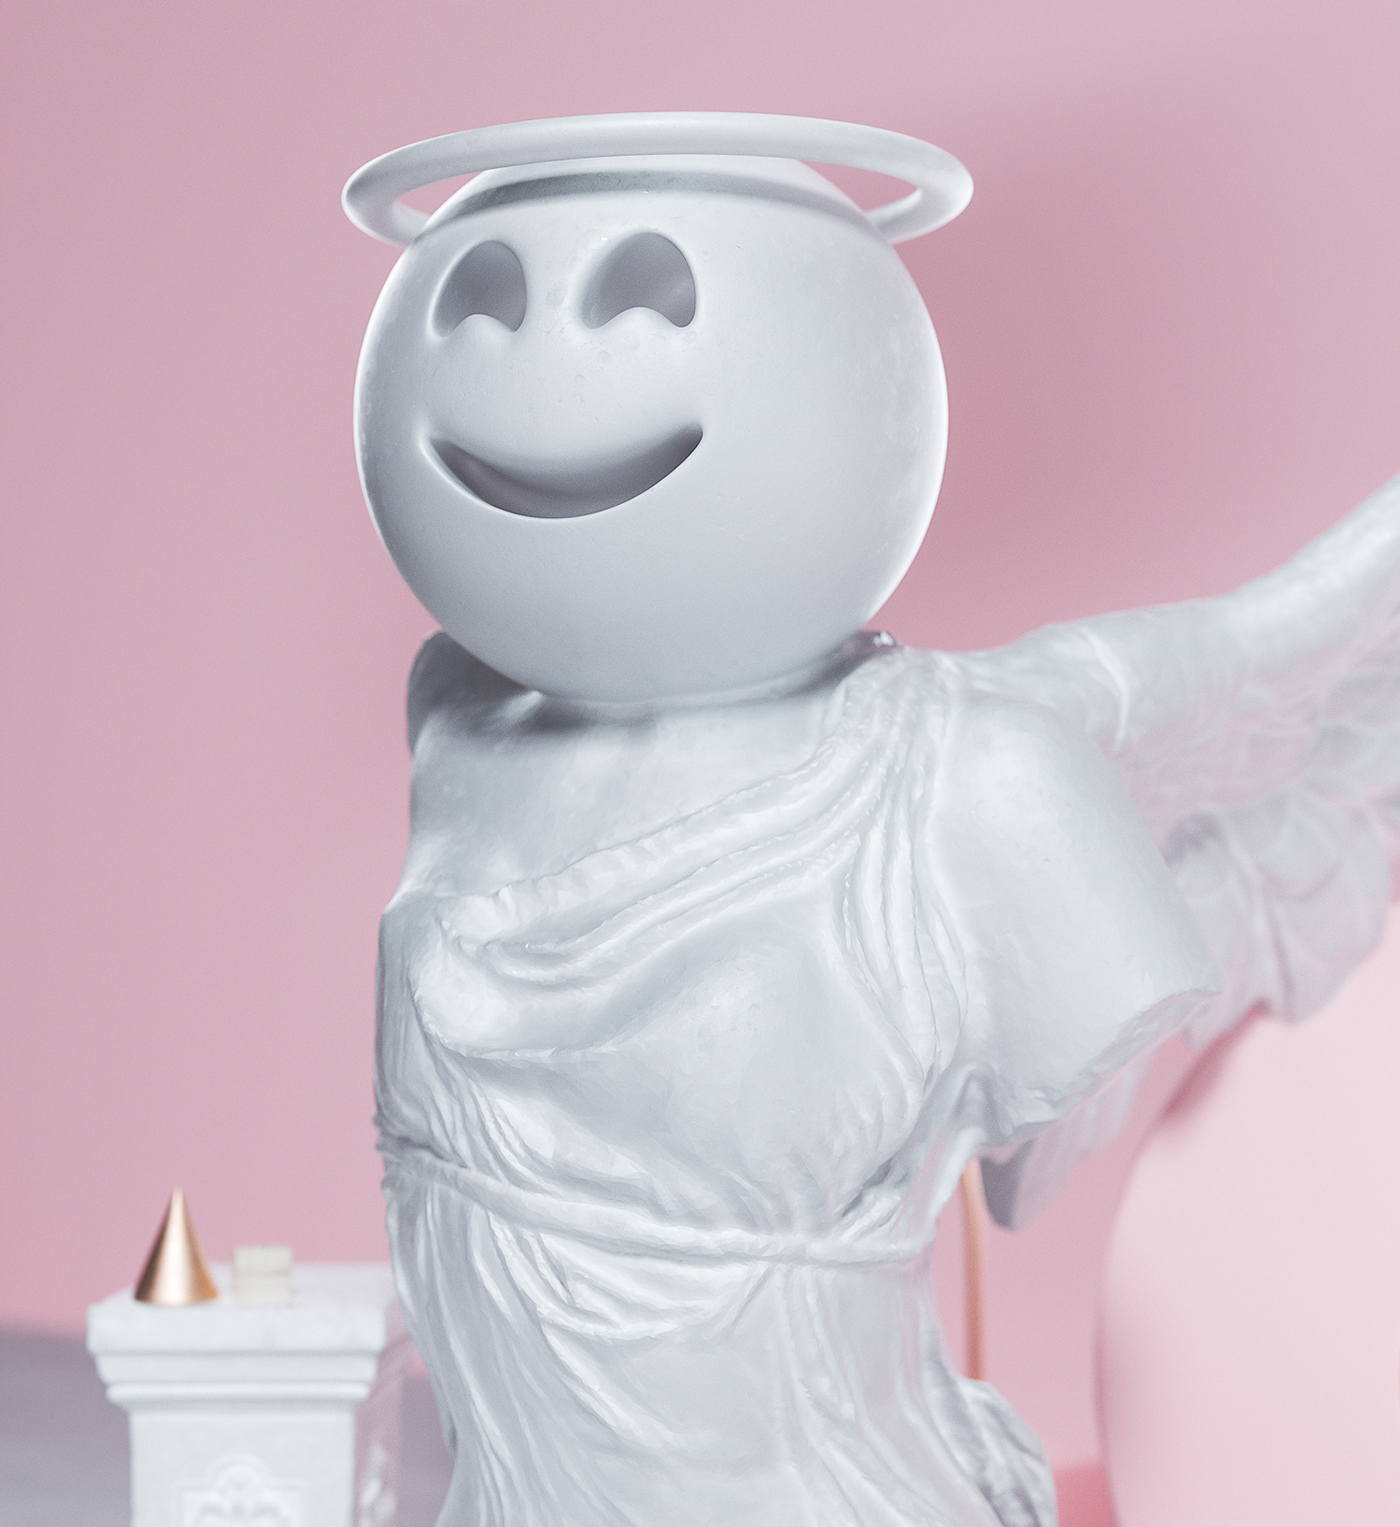 sculpture Emojis social Digital Art  cinema 4d octane sets modern concept 3D